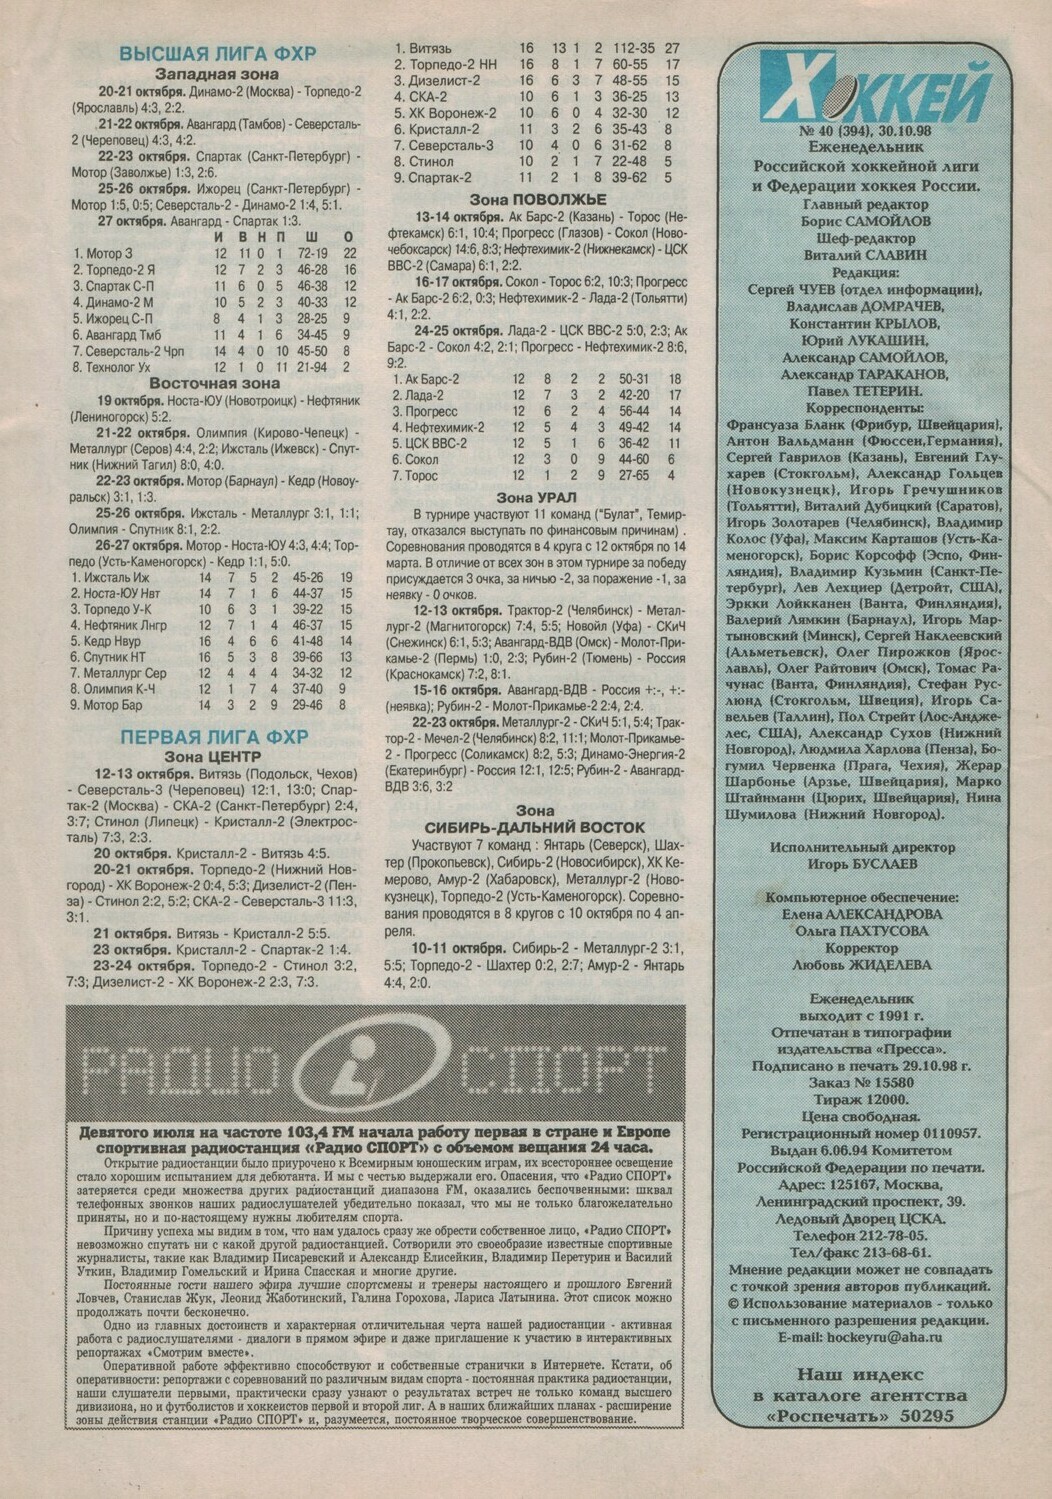 Еженедельник "Хоккей" от 1997г.